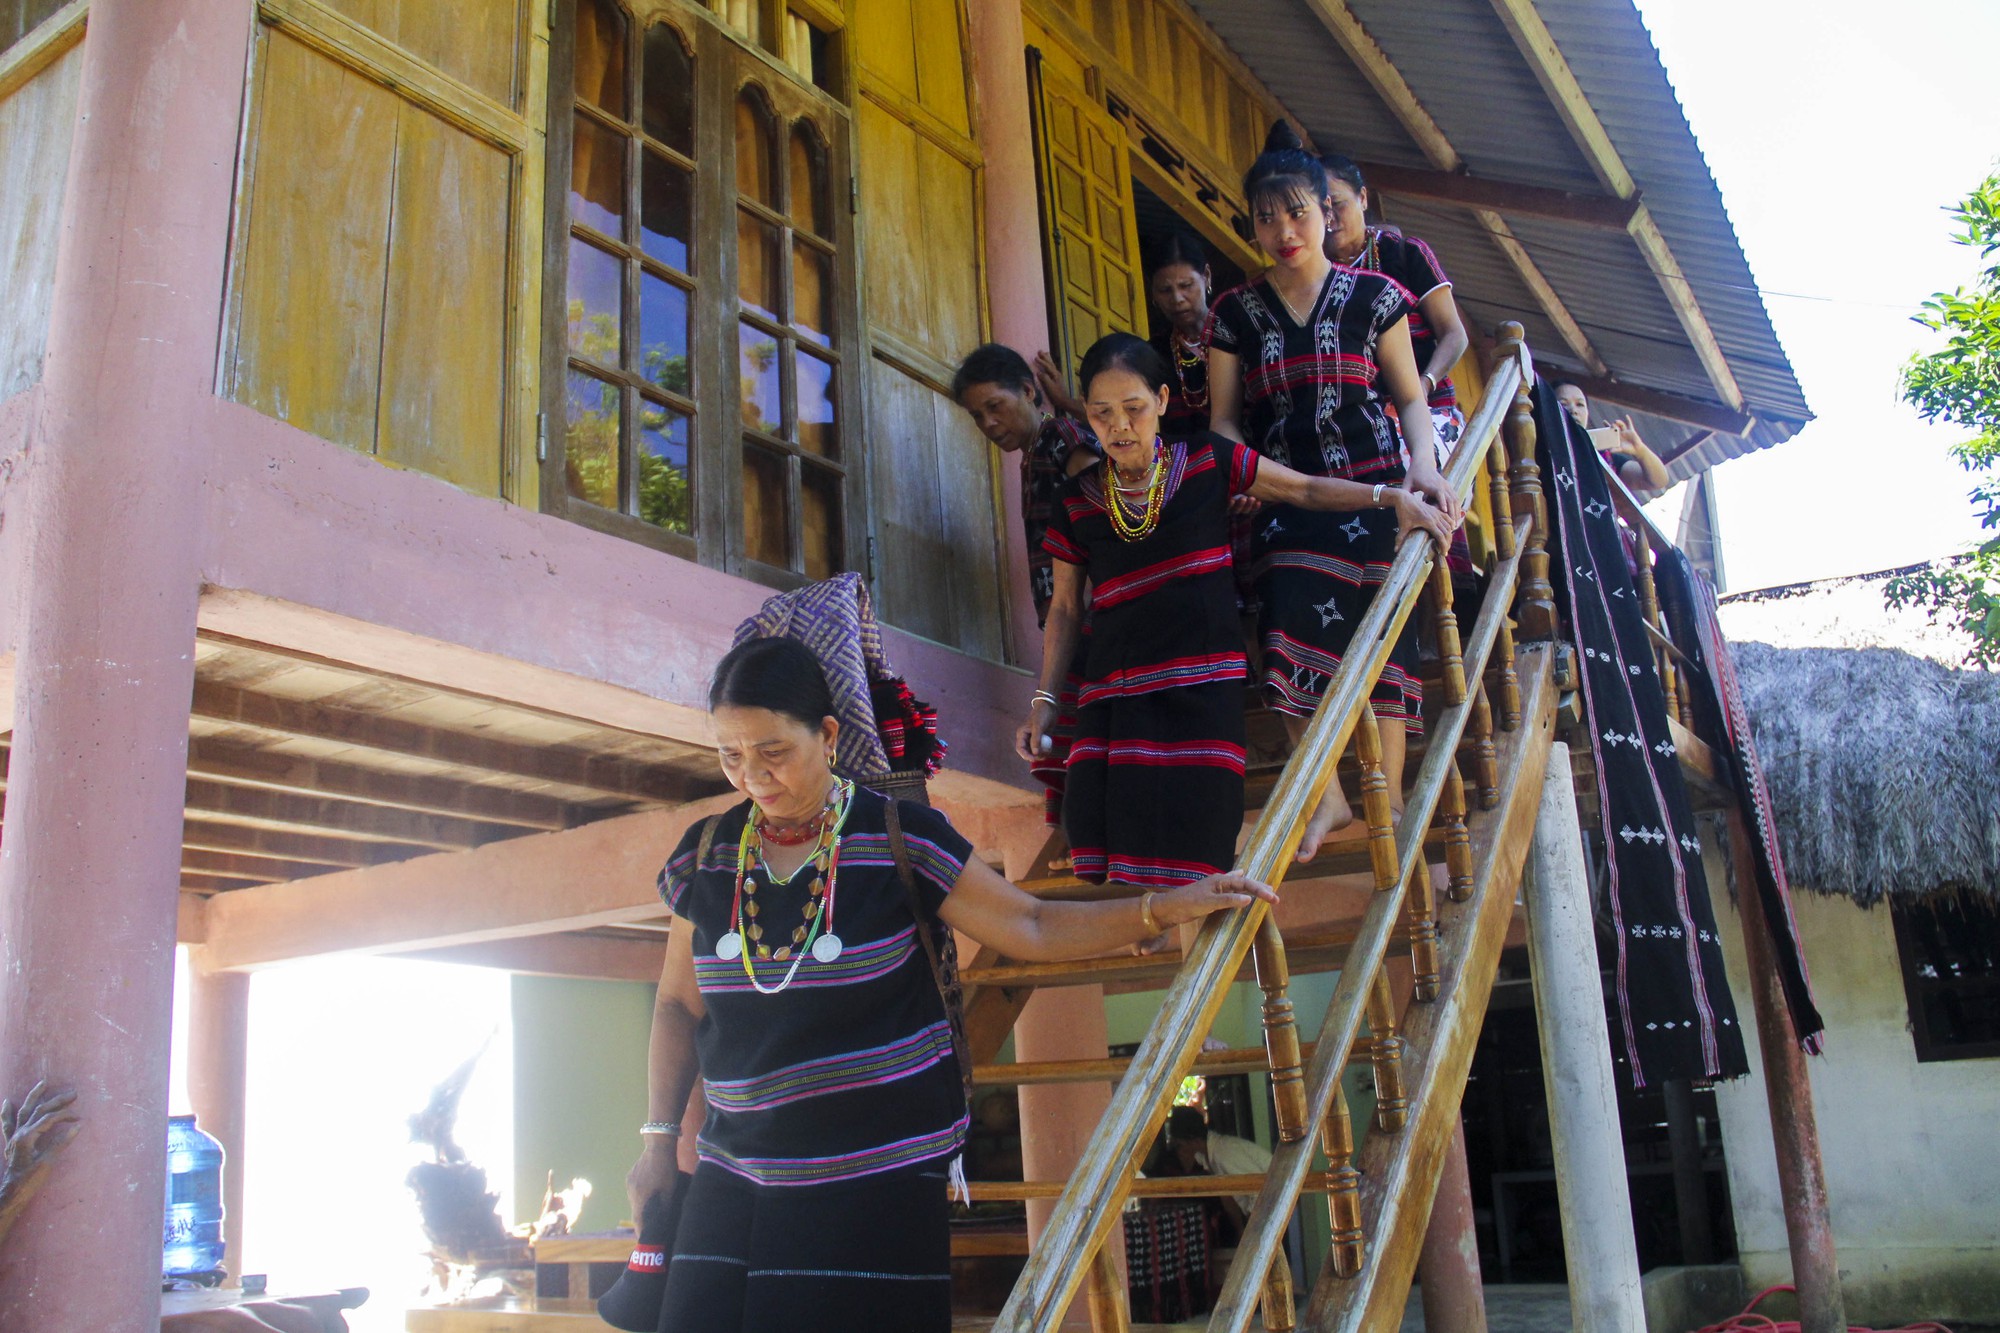 Miền sơn cước phía Tây tỉnh Thừa Thiên Huế, điểm đến cho những du khách thích sự khám phá - Ảnh 3.